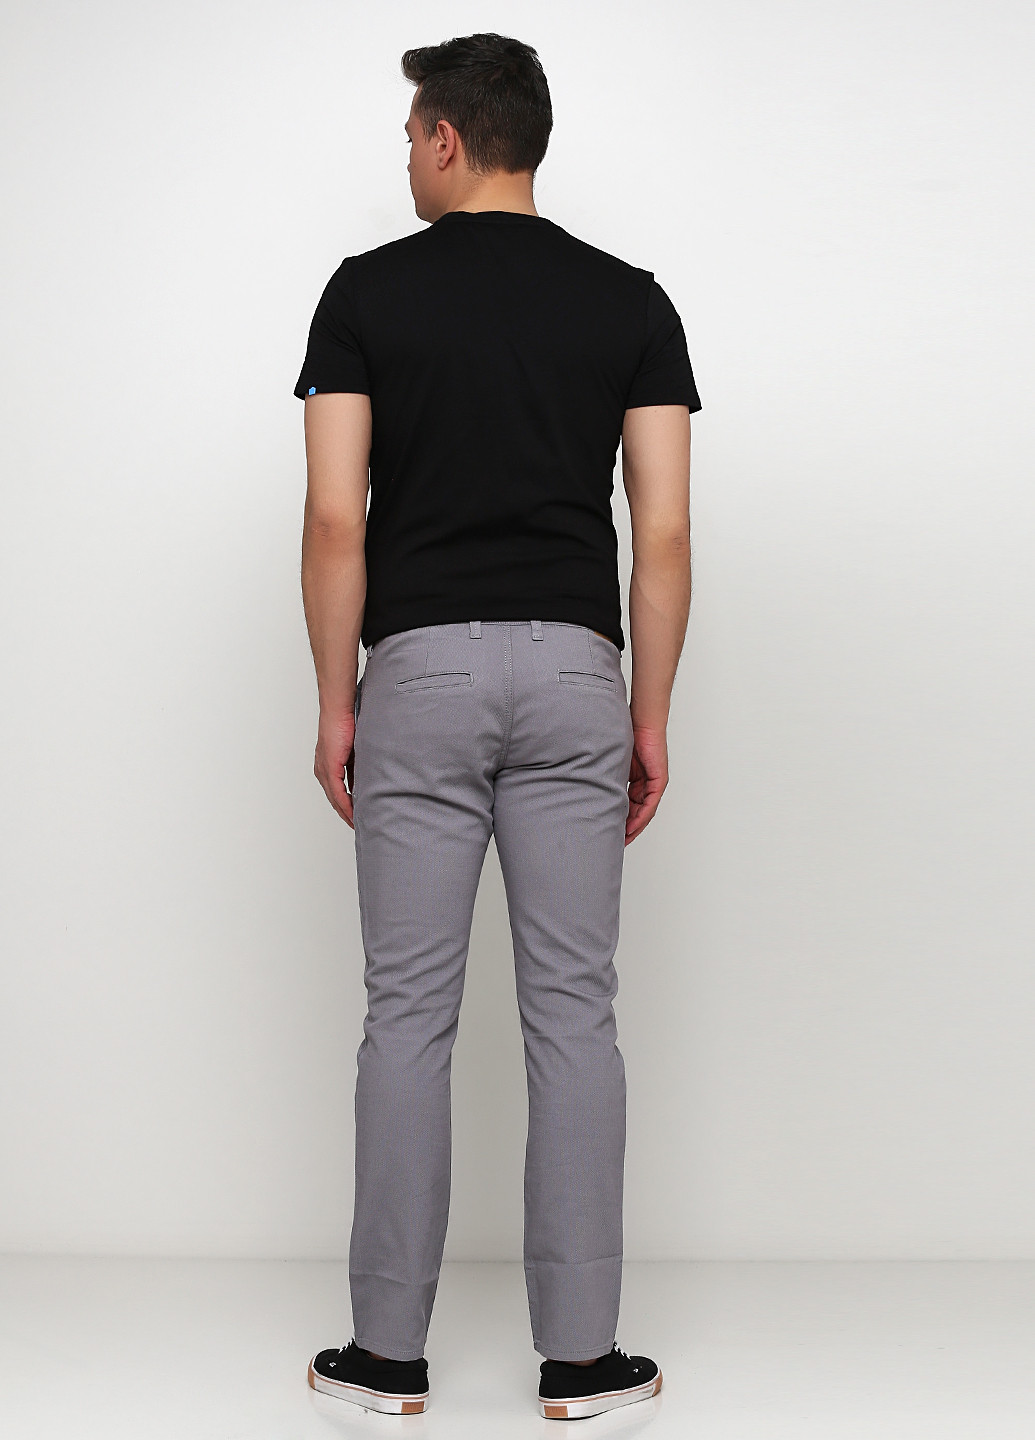 Серые кэжуал демисезонные прямые брюки Madoc Jeans